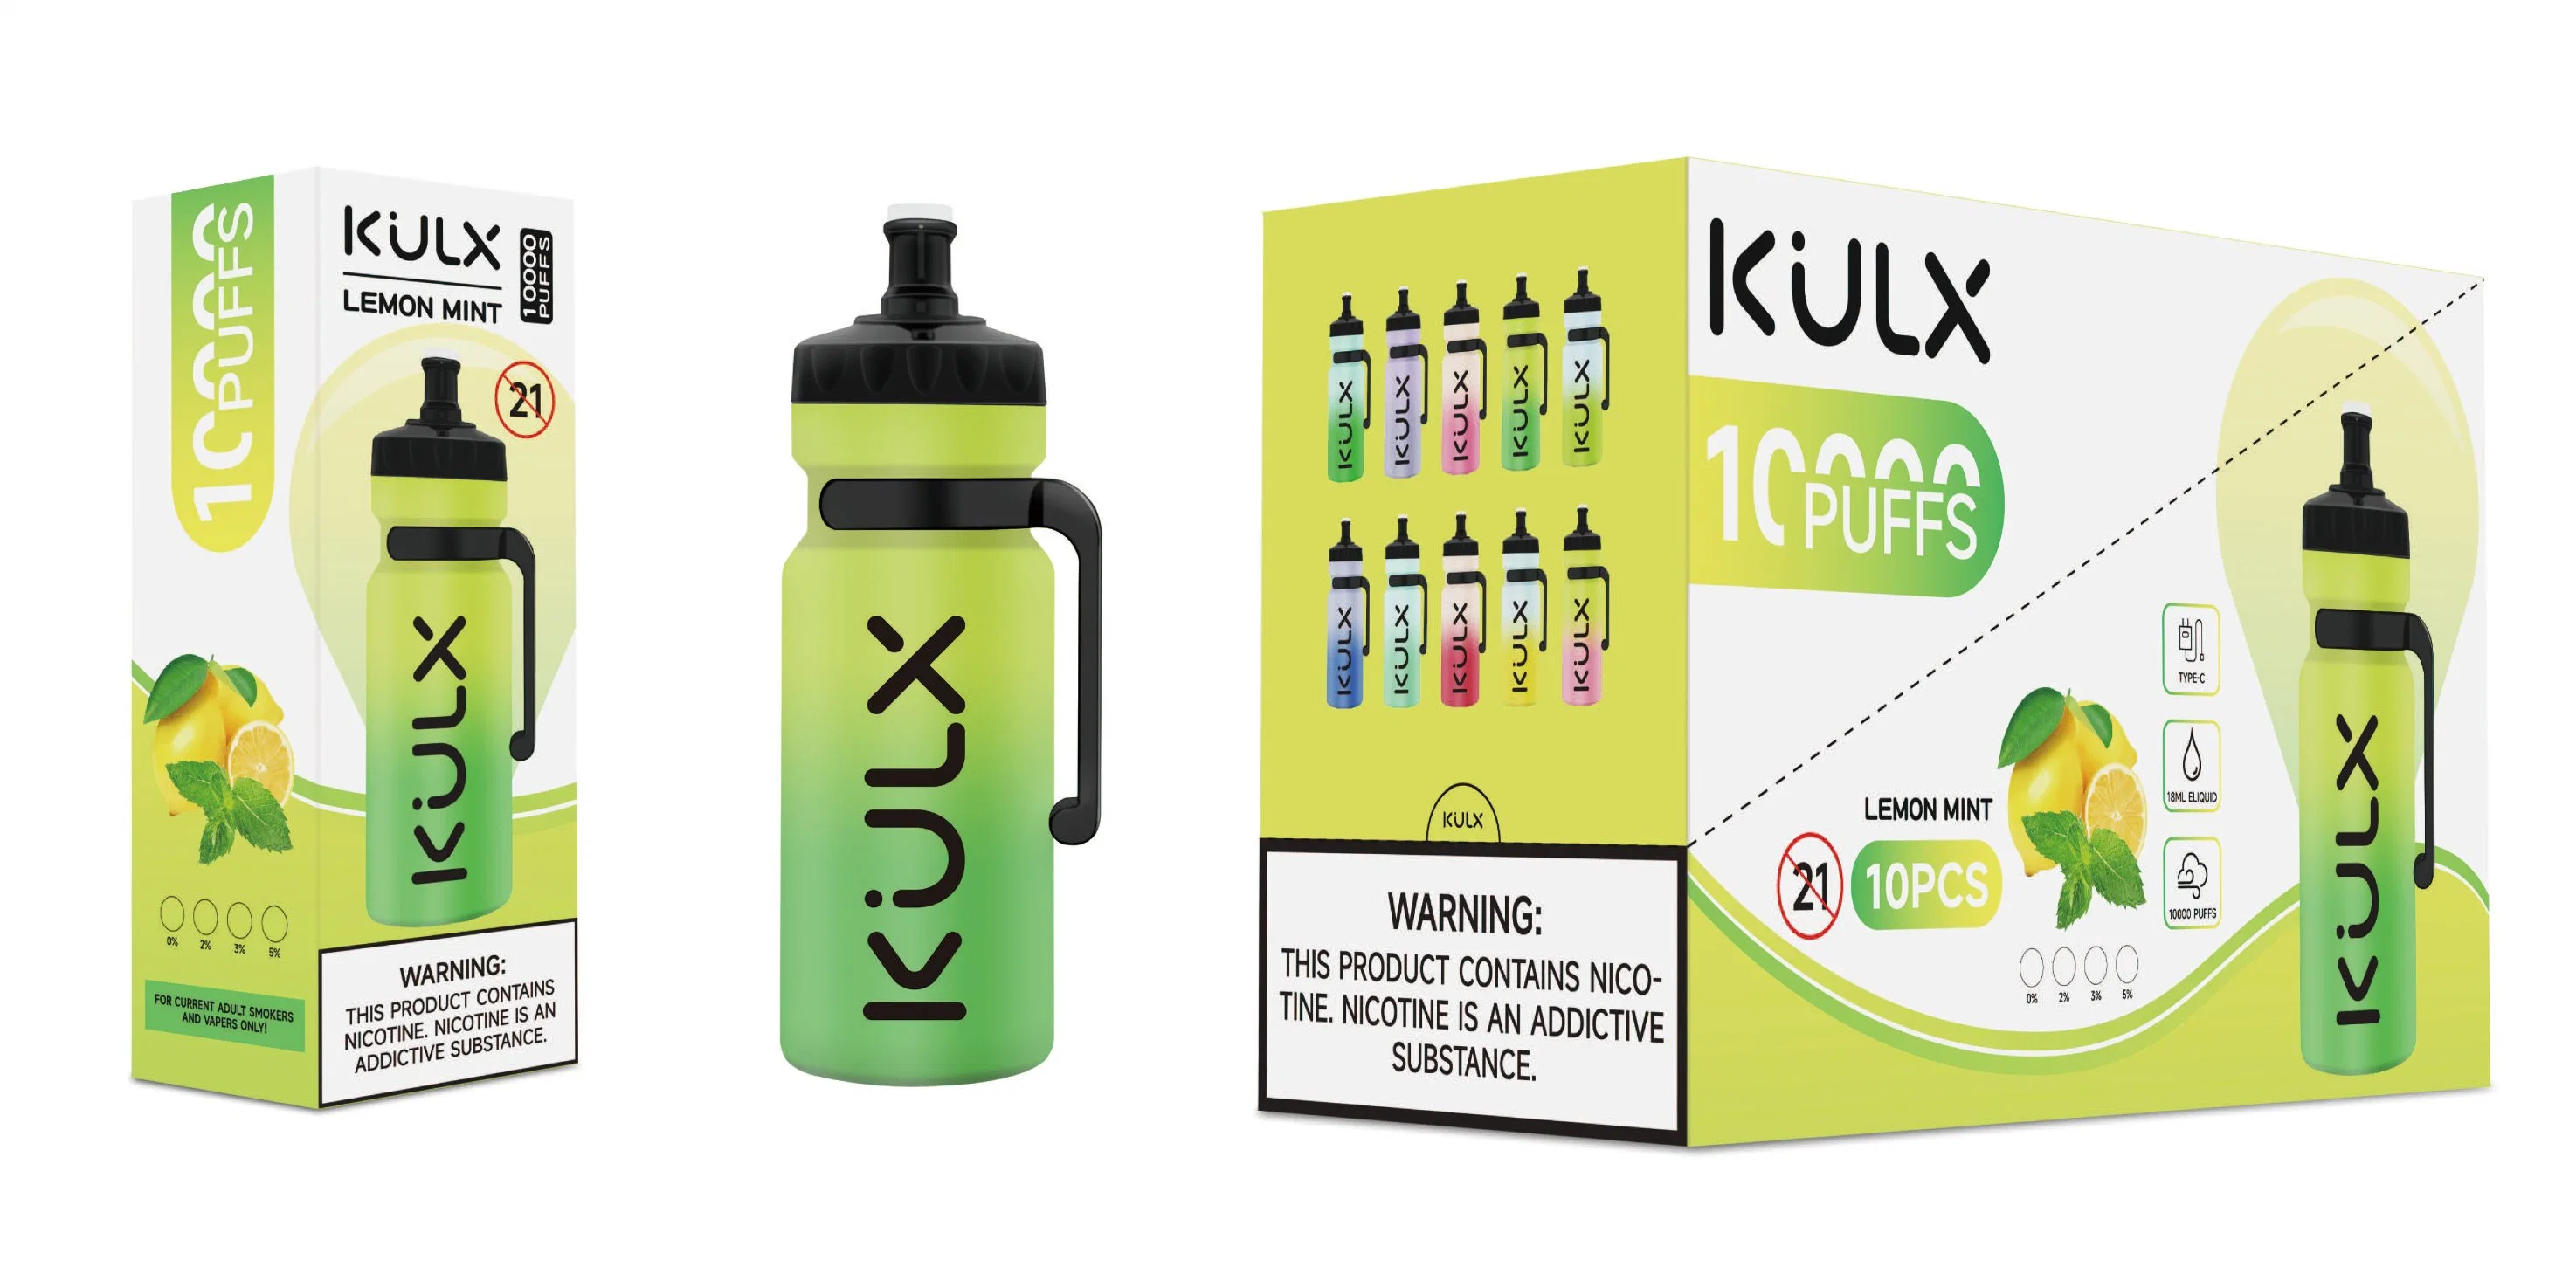 Kulx 10000 Puff Disposable 2% 5% никотин Оптовая продажа дешево уникально Испытайте Vape